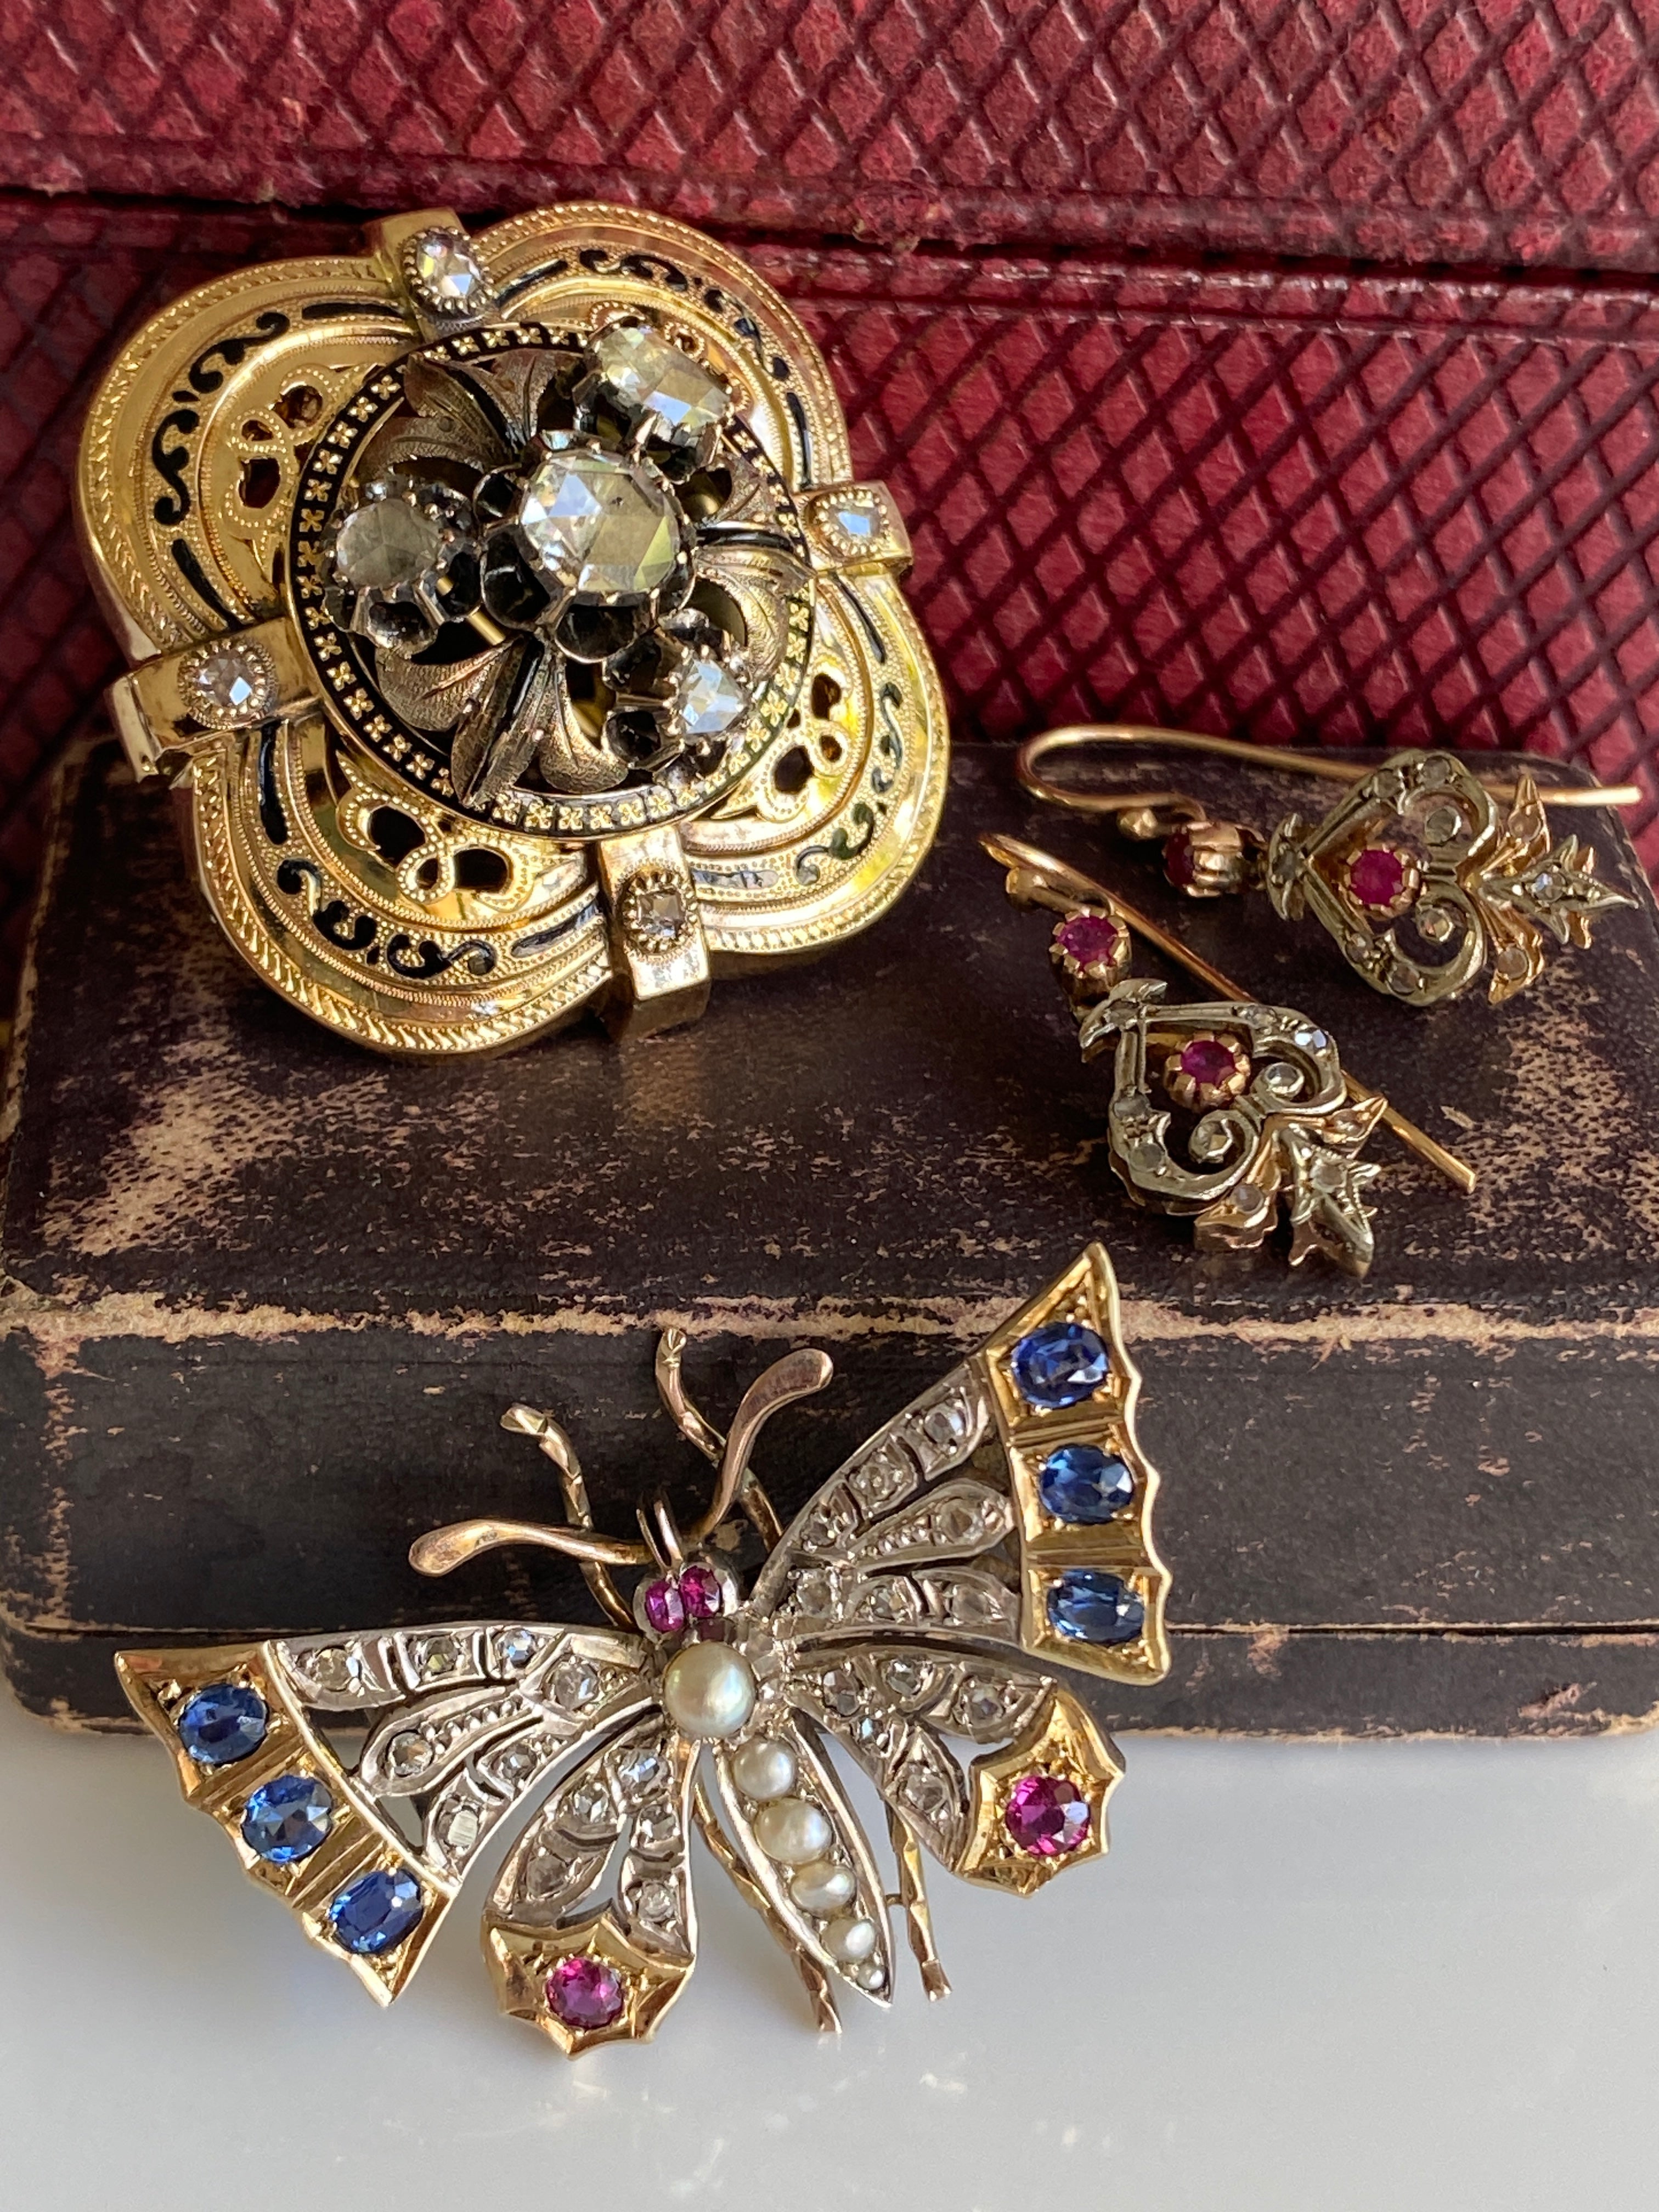 Edwardian Style Ruby & Diamond Pendant Earrings